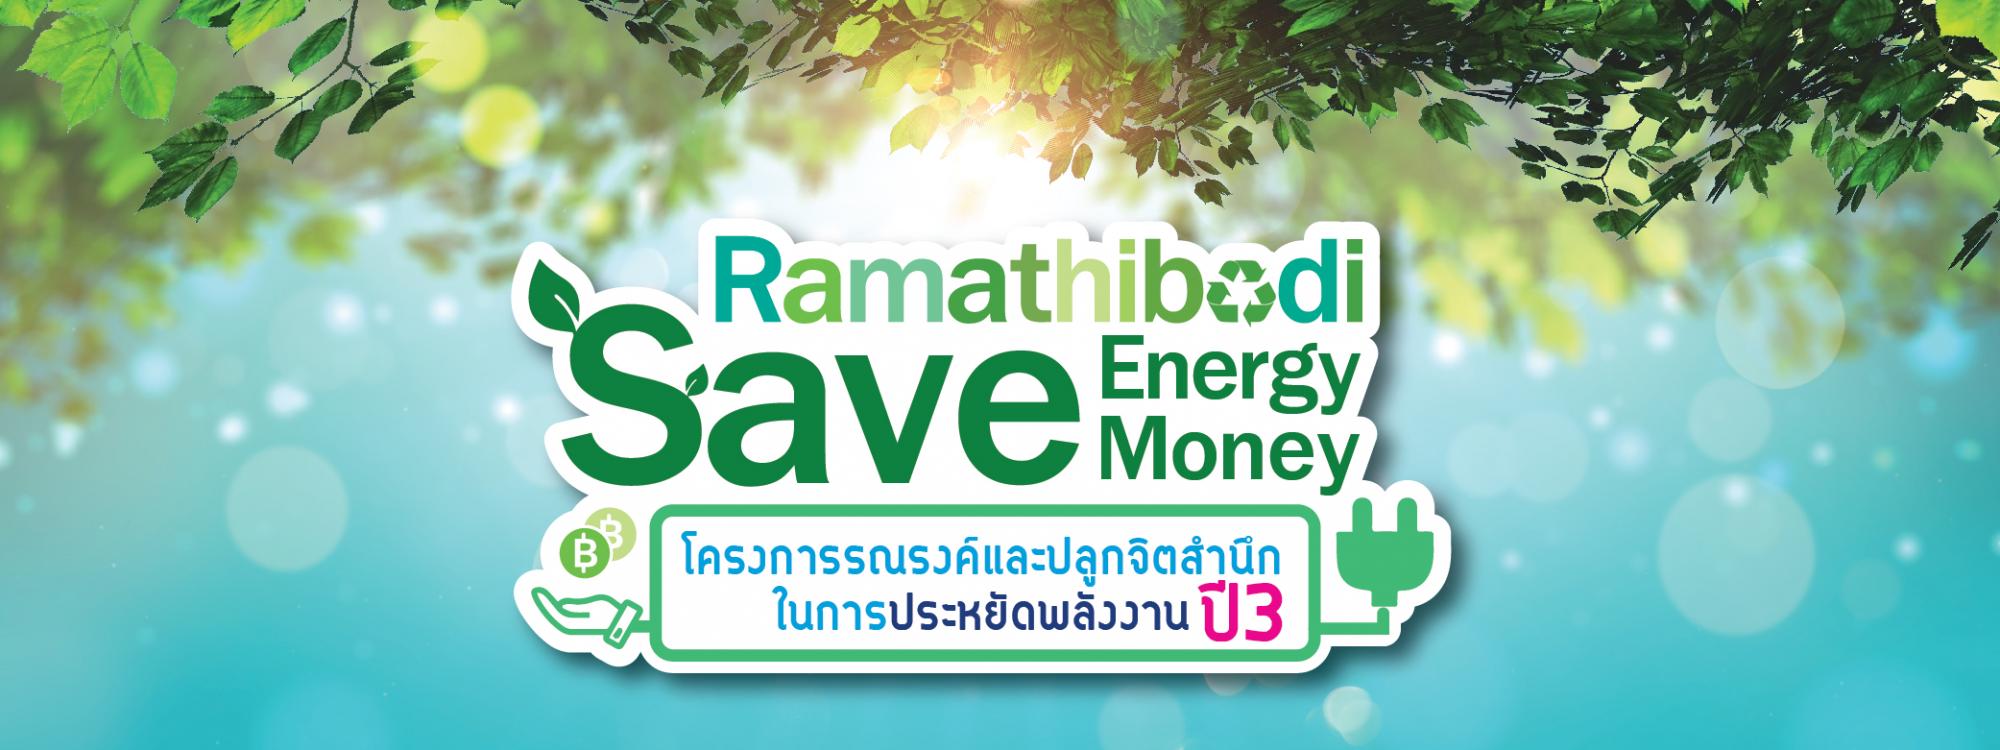 Ramathibodi Save Energy Money